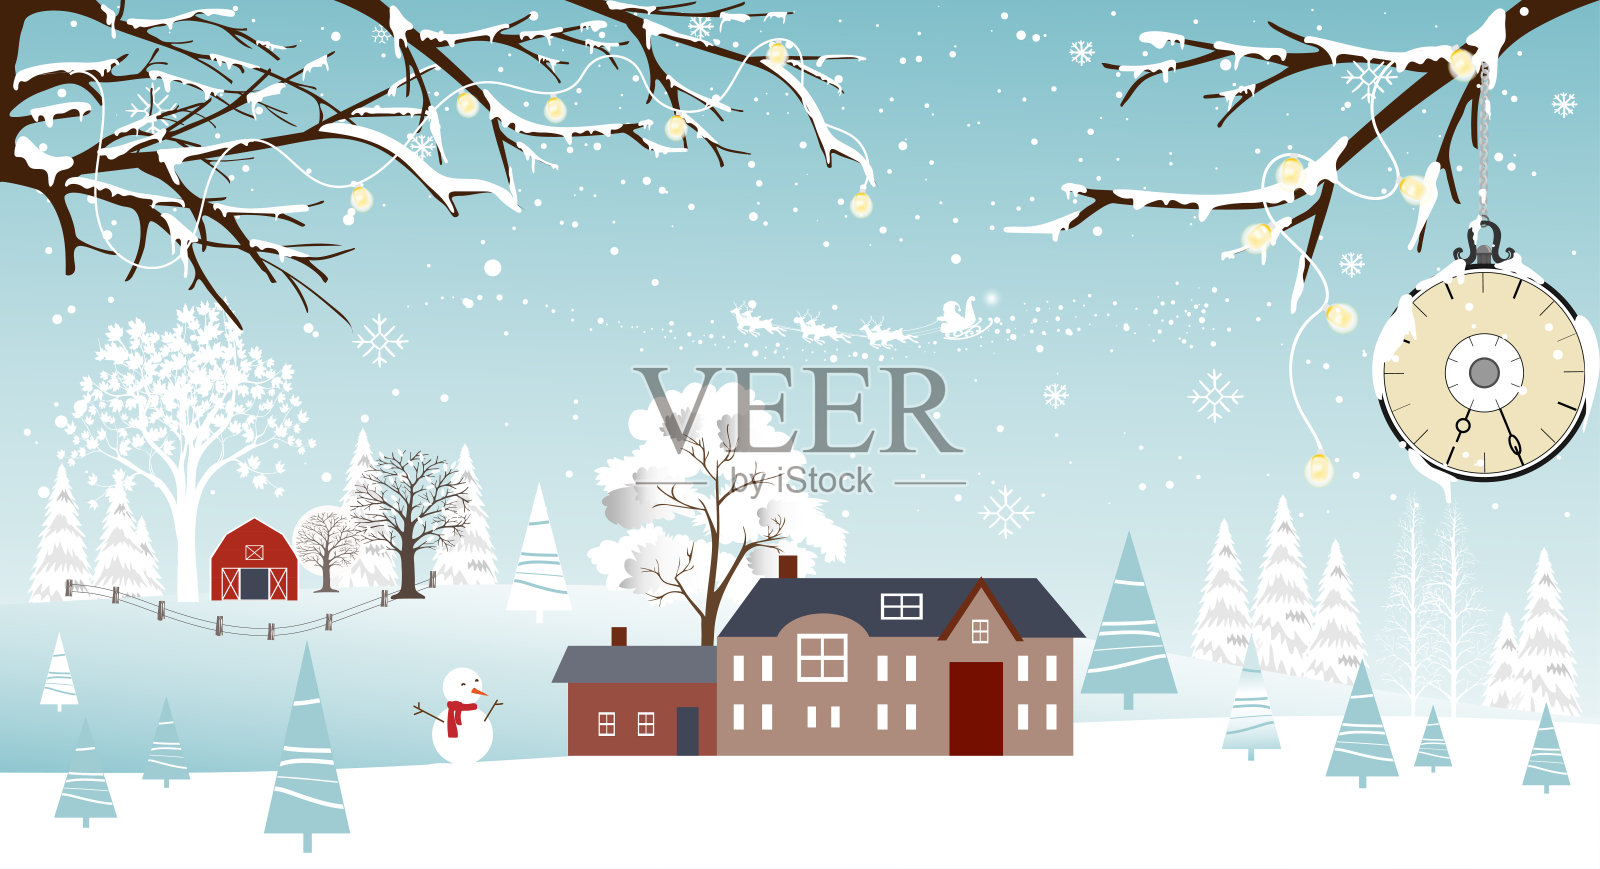 矢量插图卡圣诞快乐和新年快乐全景冬季景观在村庄农舍松树和雪人。设计模板素材